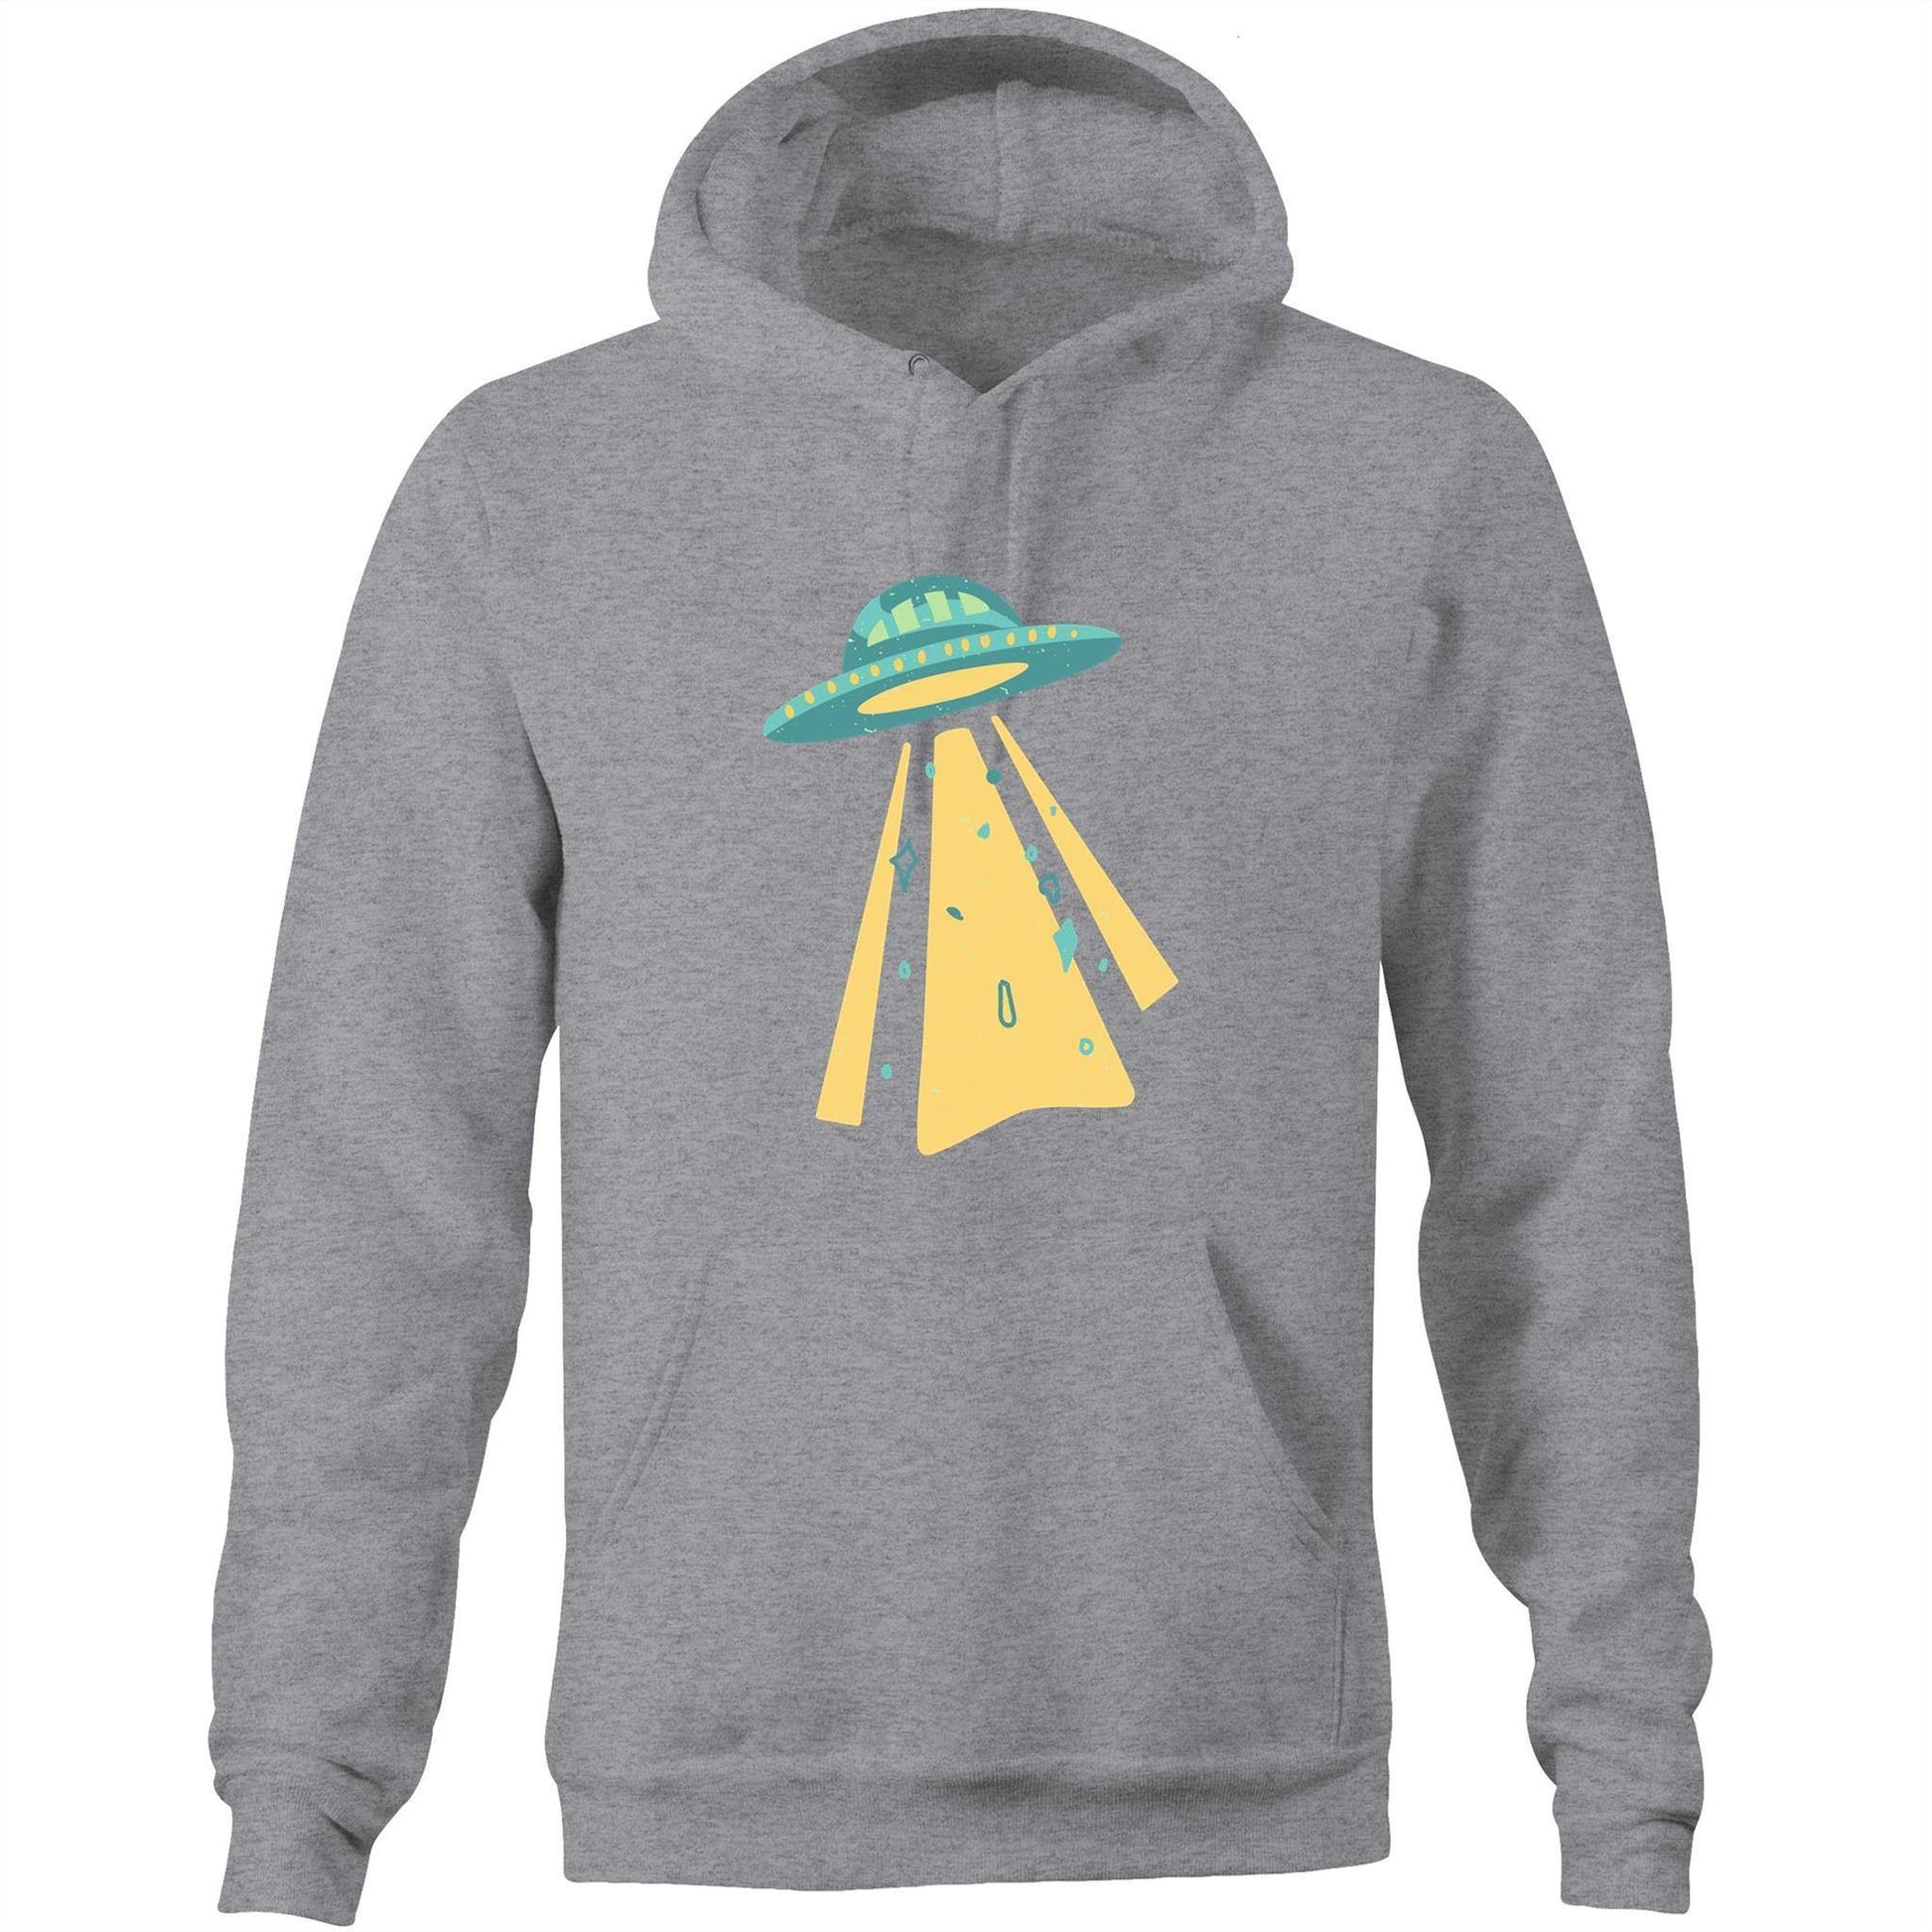 UFO - Pocket Hoodie Sweatshirt Grey Marle Hoodie Mens Retro Sci Fi Space Womens